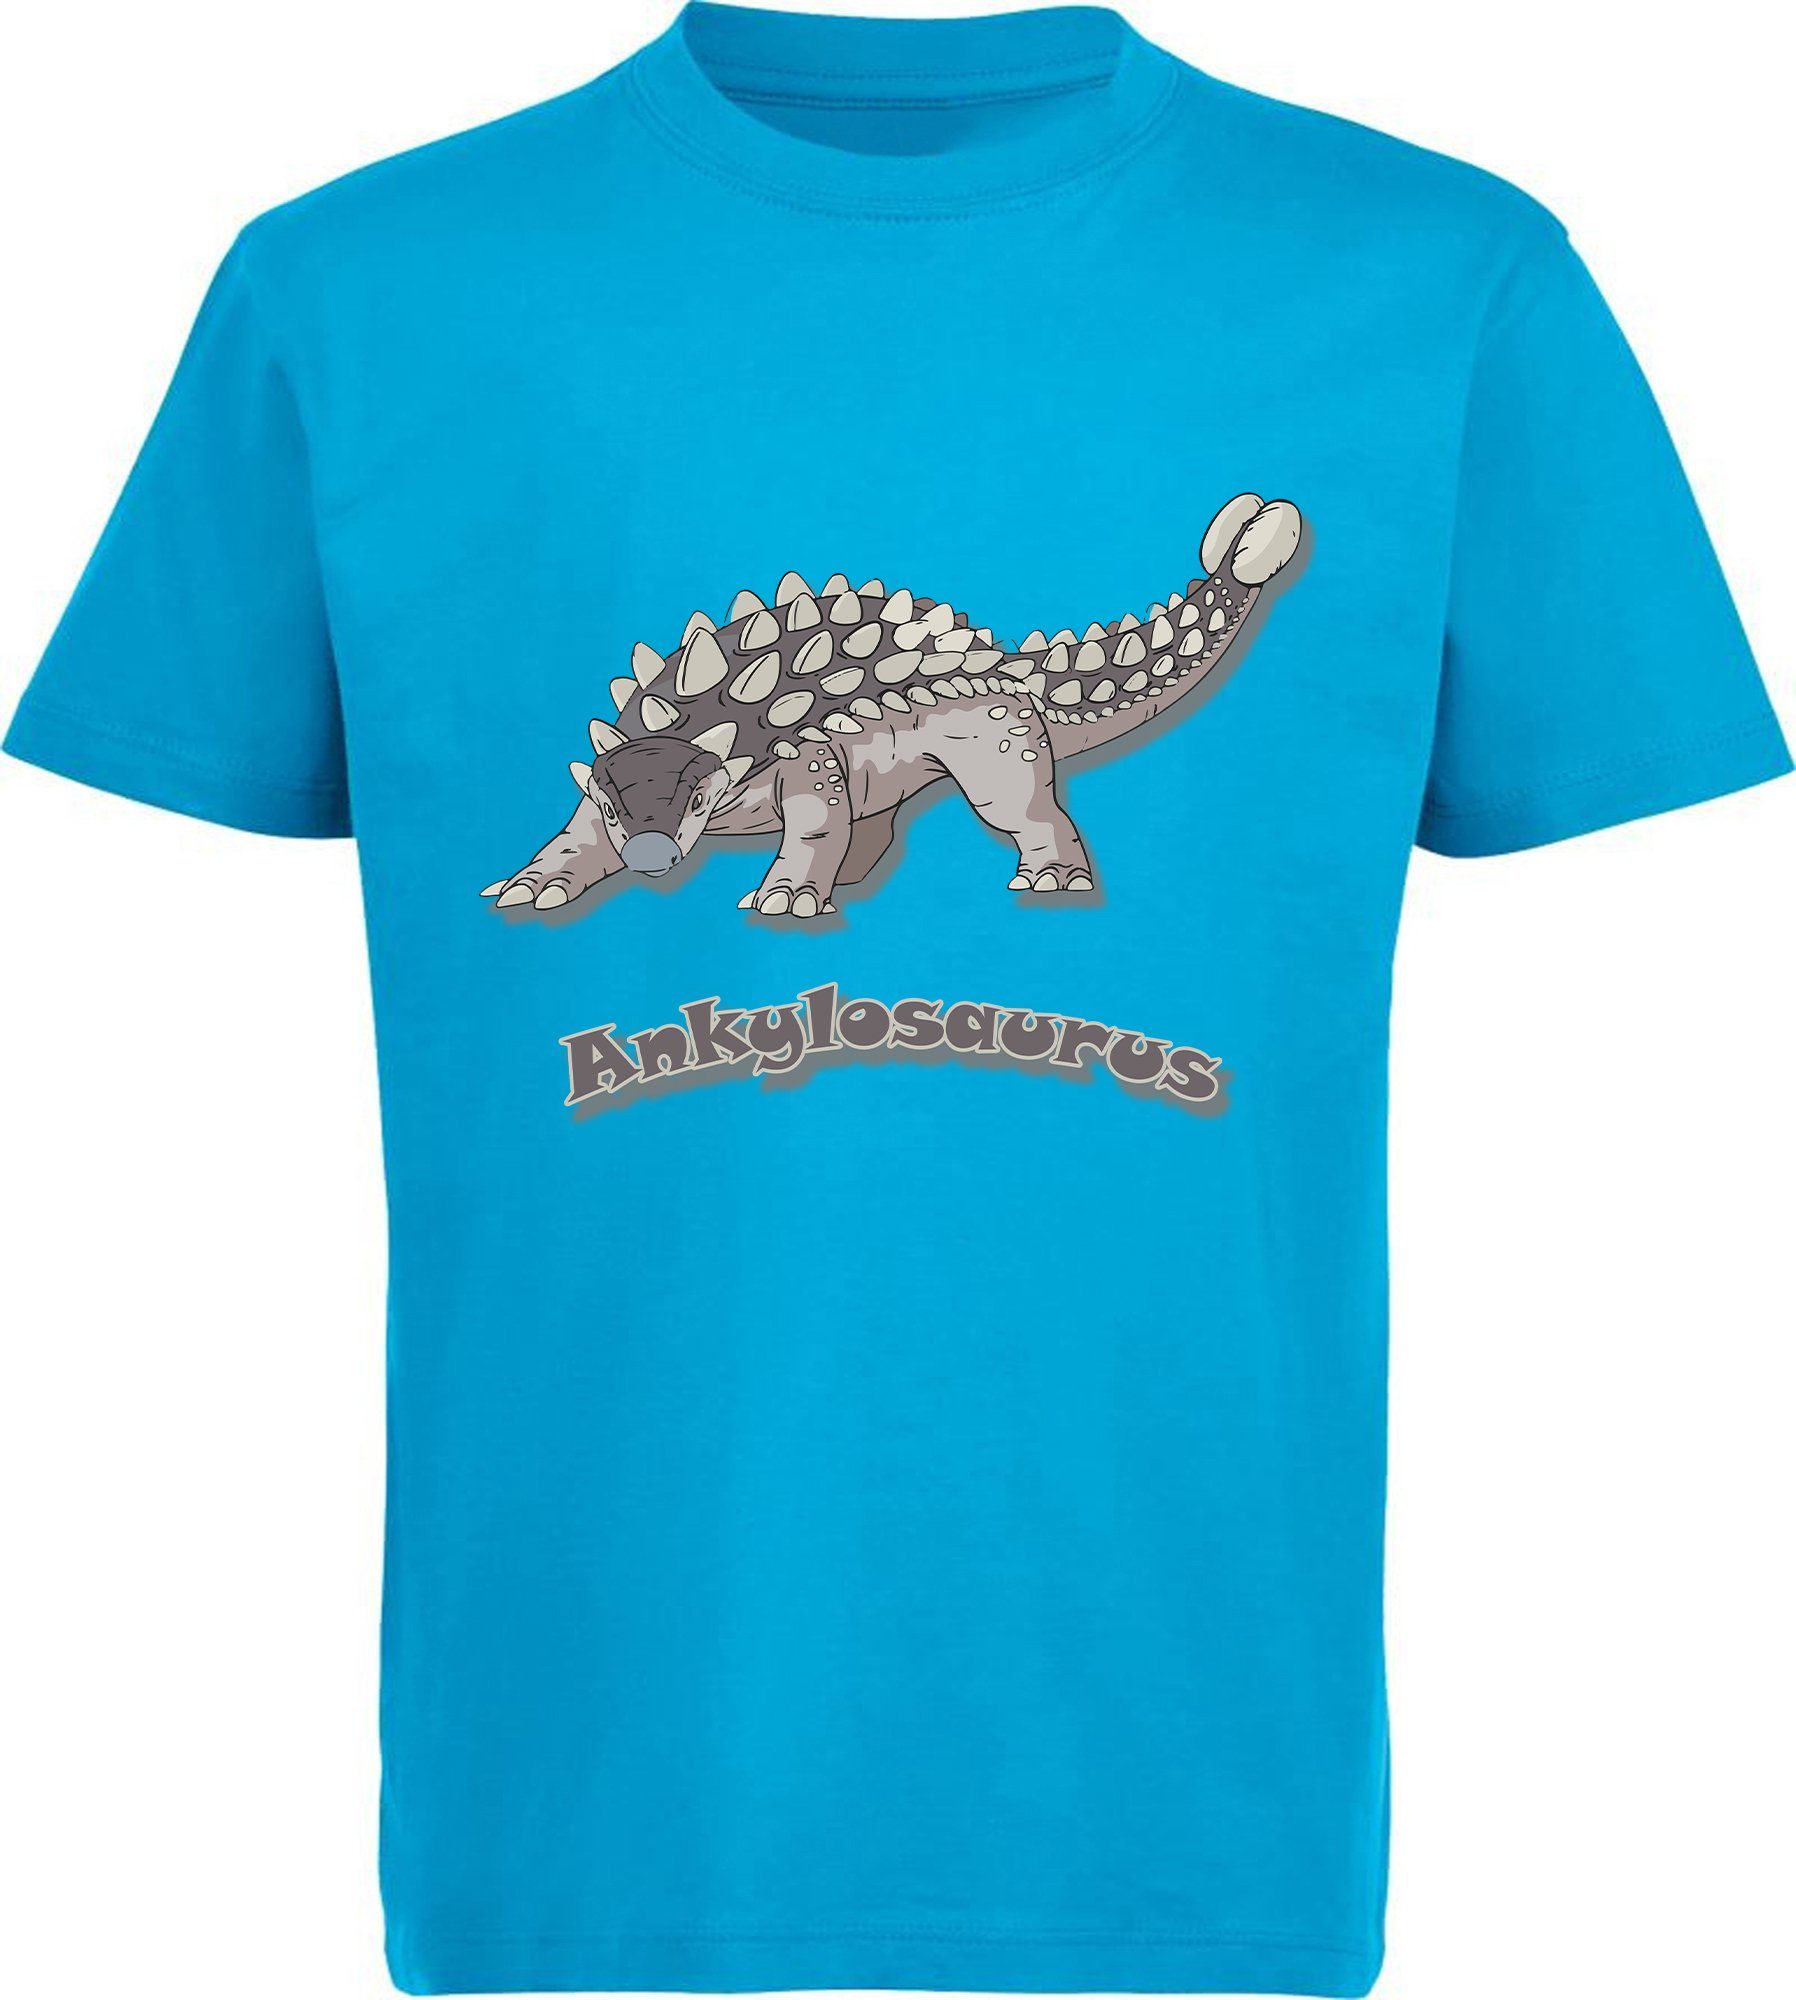 blau, rot, MyDesign24 schwarz, aqua mit bedrucktes i63 weiß, blau Aufdruck, Print-Shirt mit T-Shirt 100% Kinder Ankylosaurus Dino Baumwolle